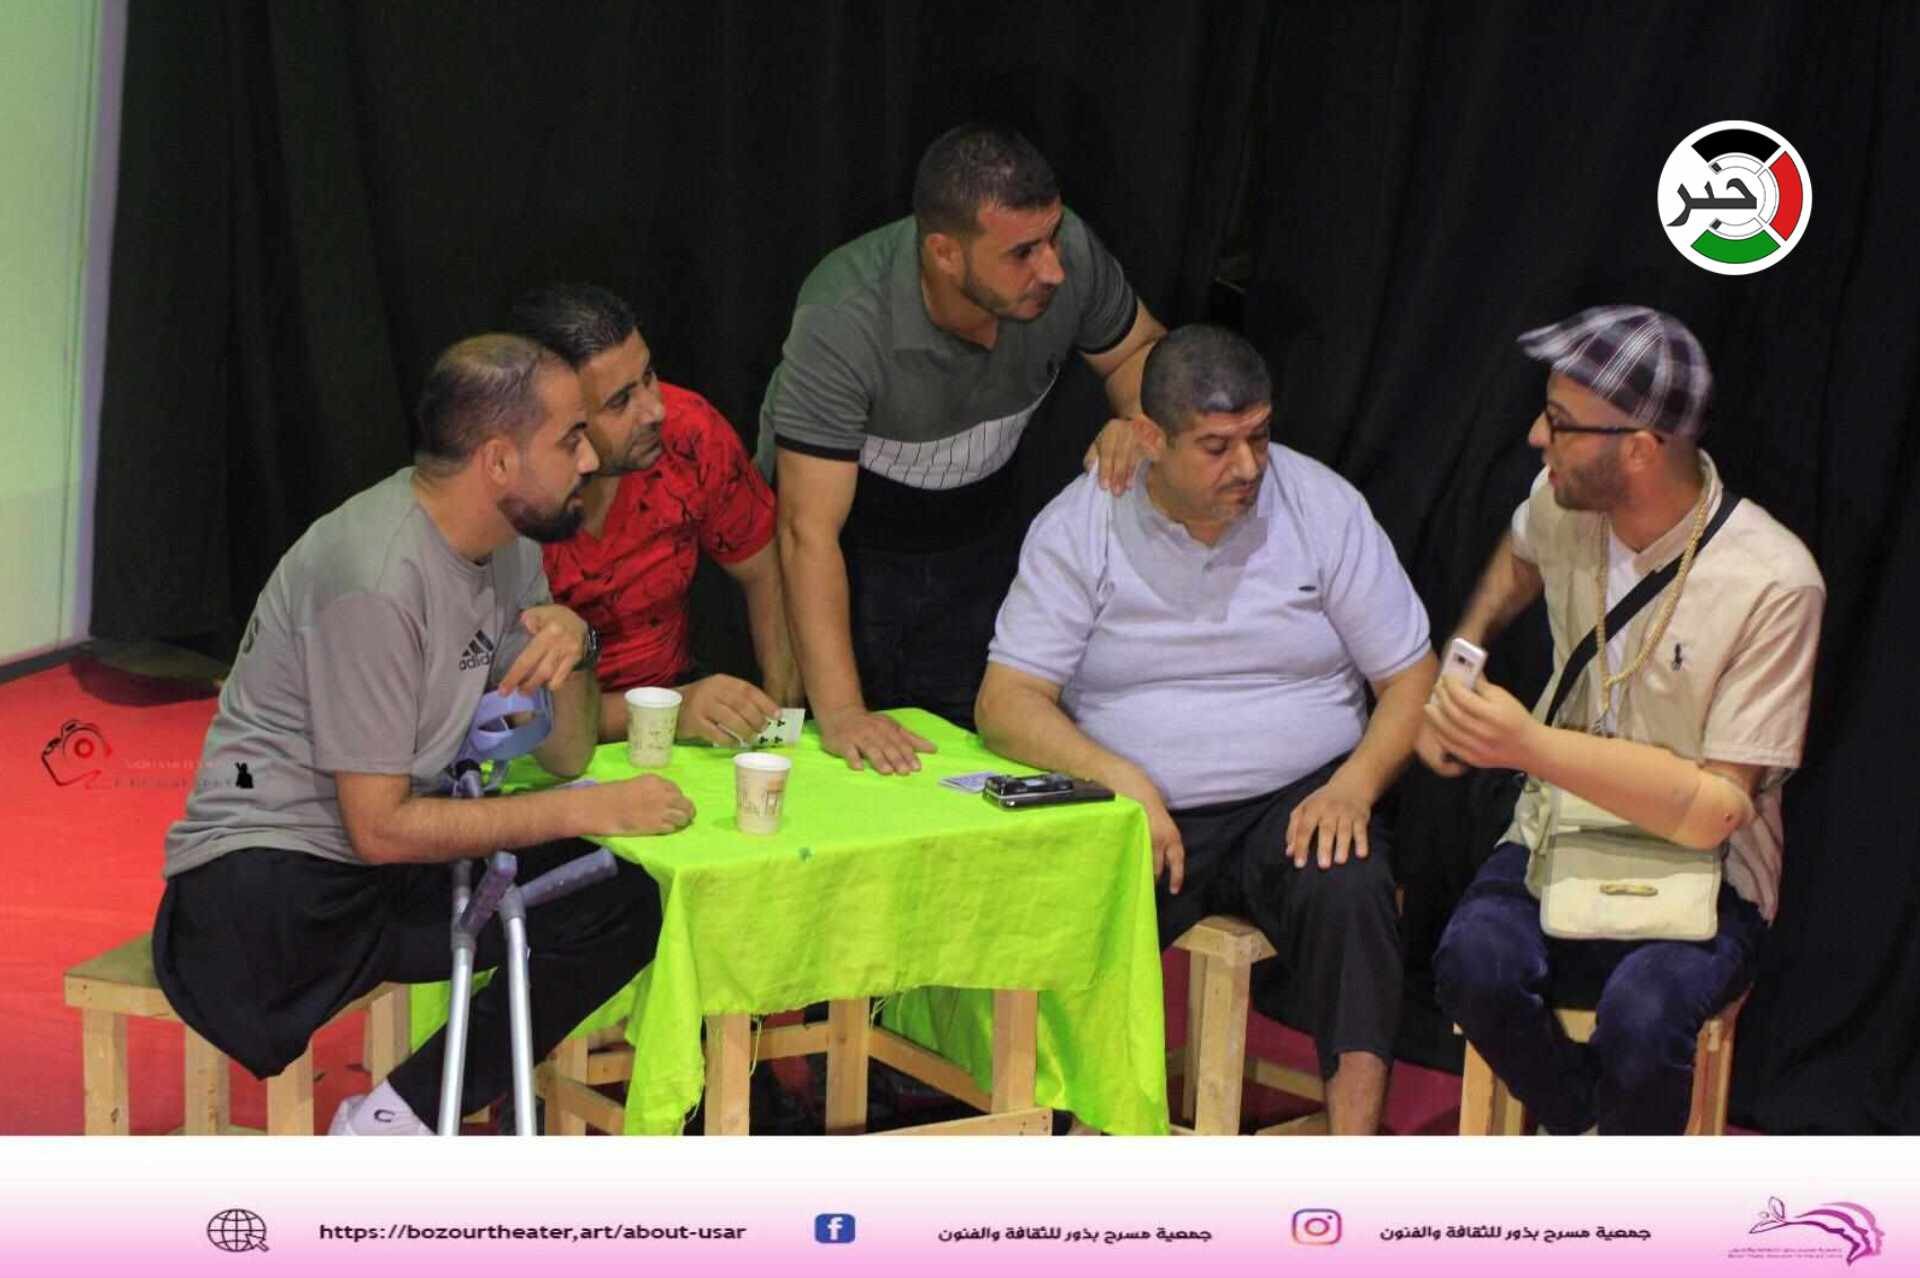 بالفيديو والصور: عمل مسرحي يُعرض لأول مرة يُحاكي واقع المعاقين في قطاع غزة